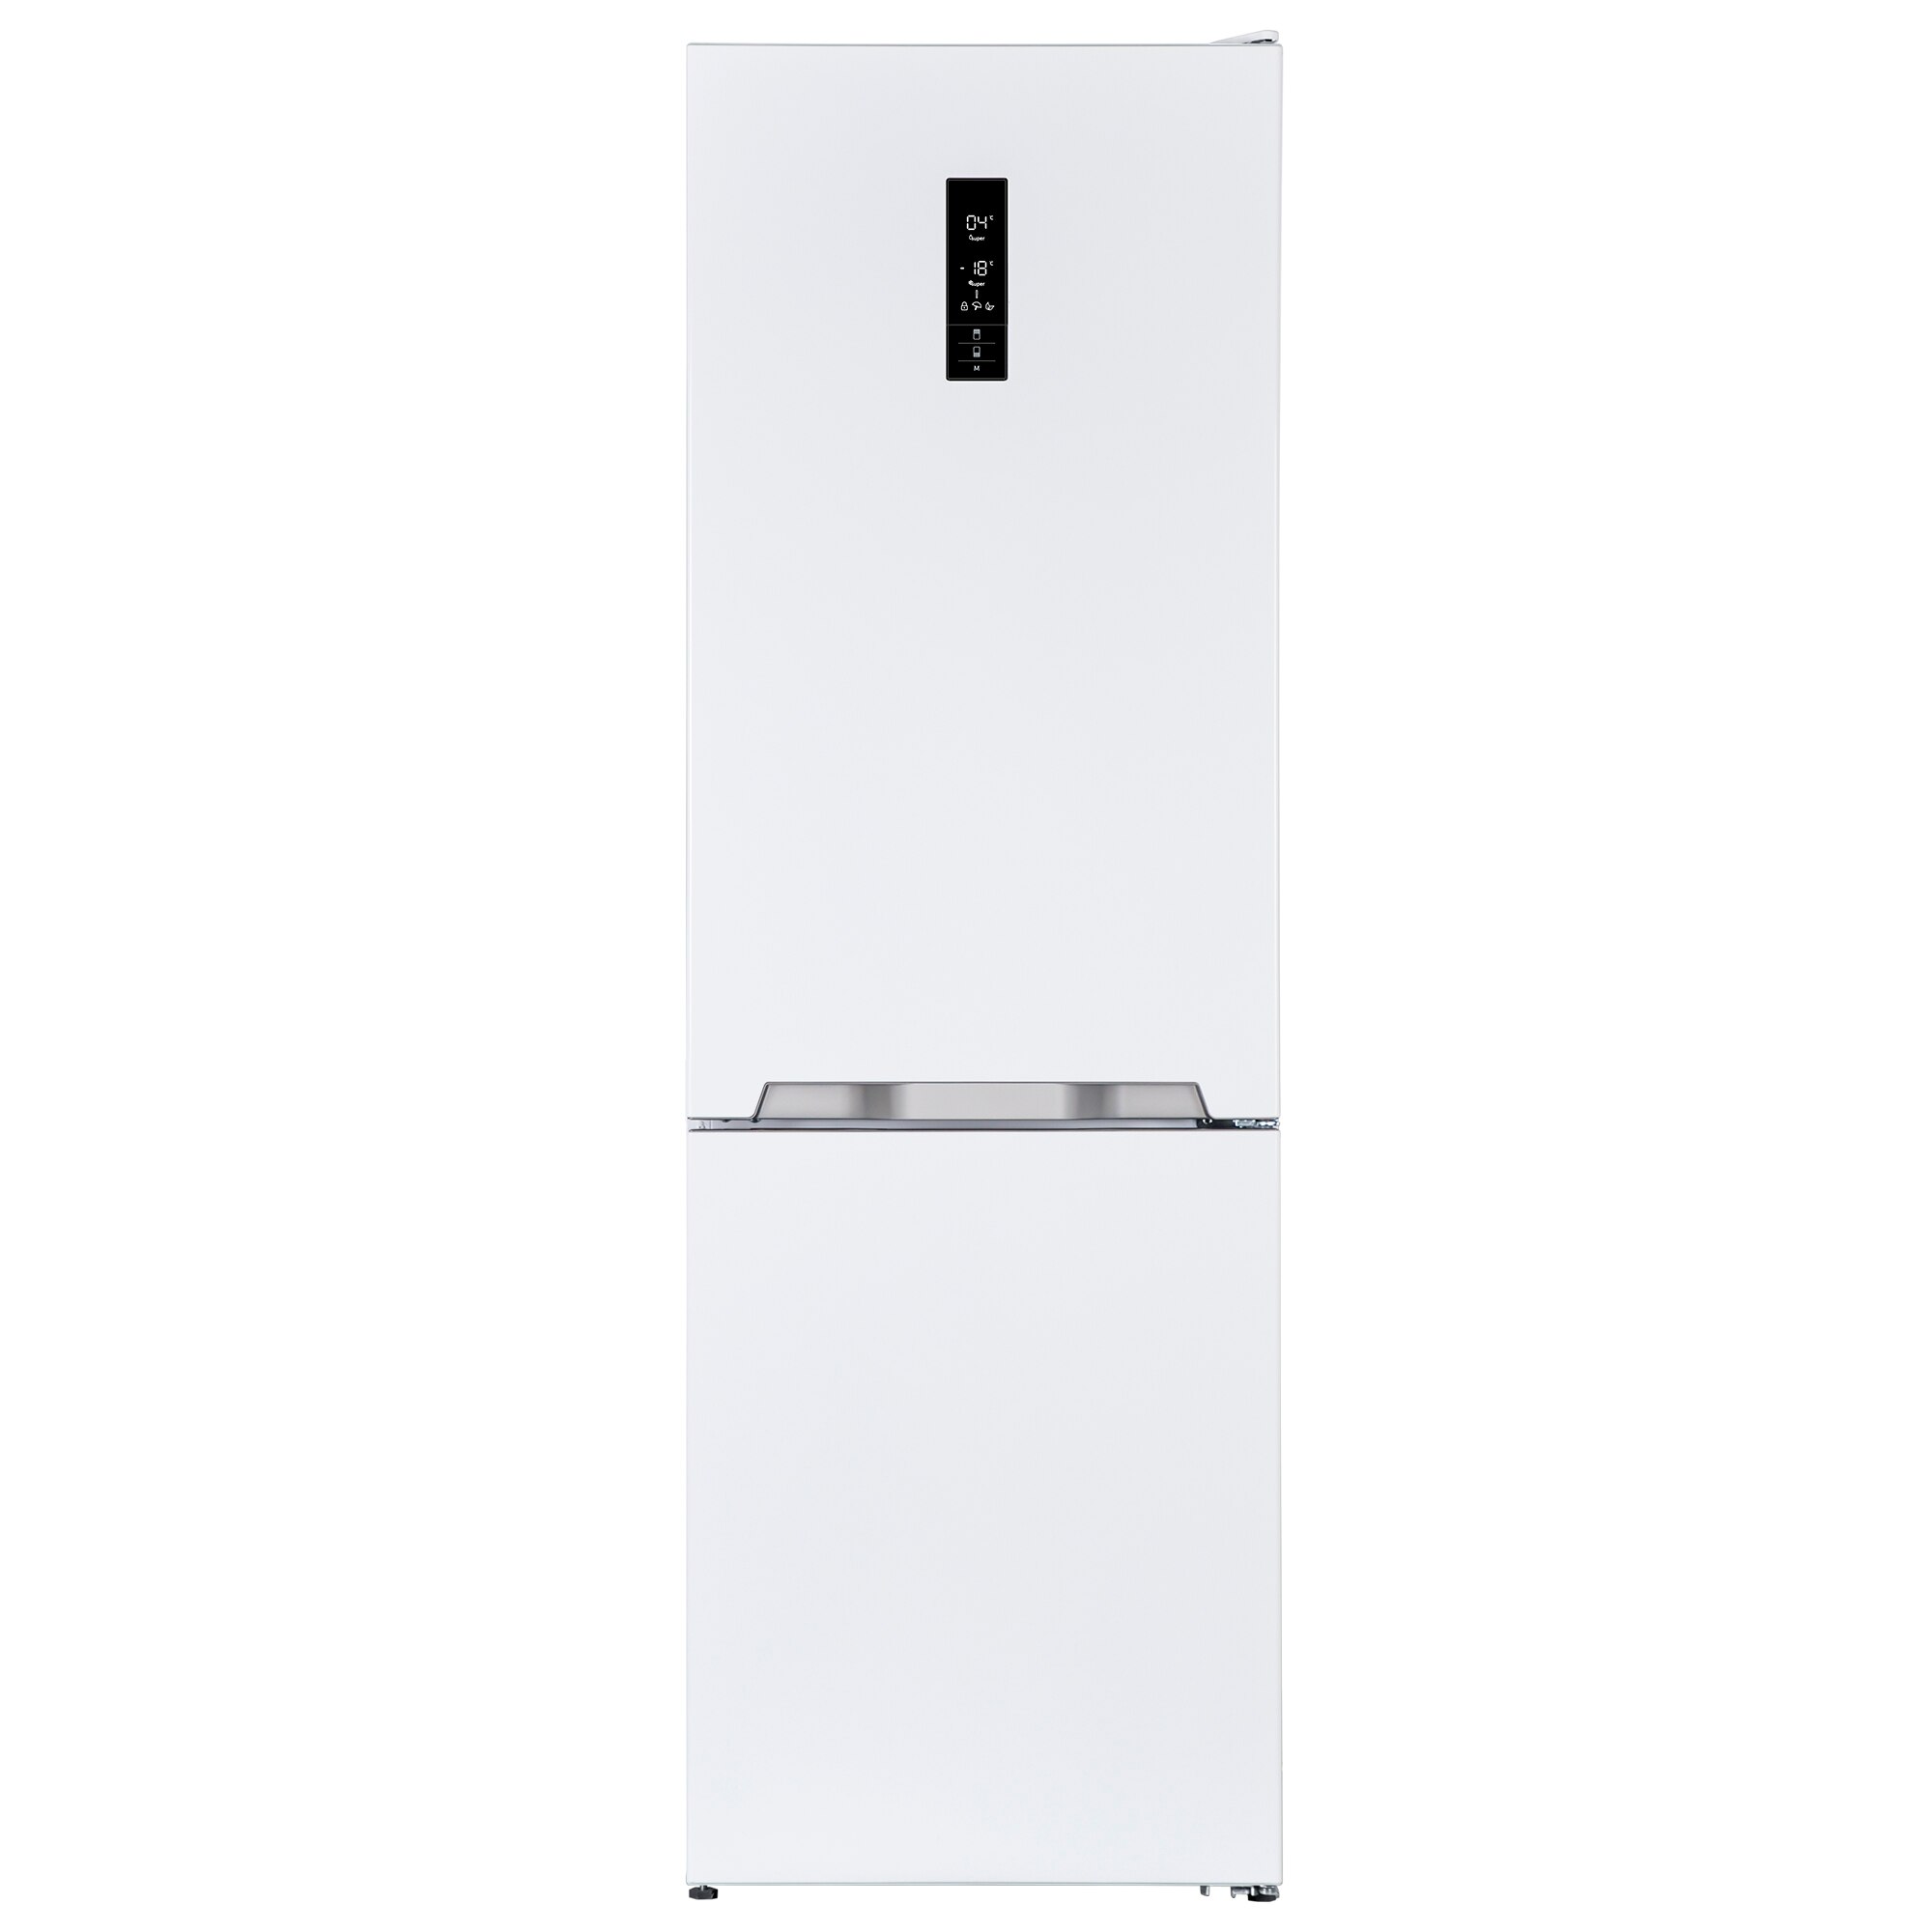 Хладилник Sharp SJ-BA10-IEXW2 с обем от 324 л.